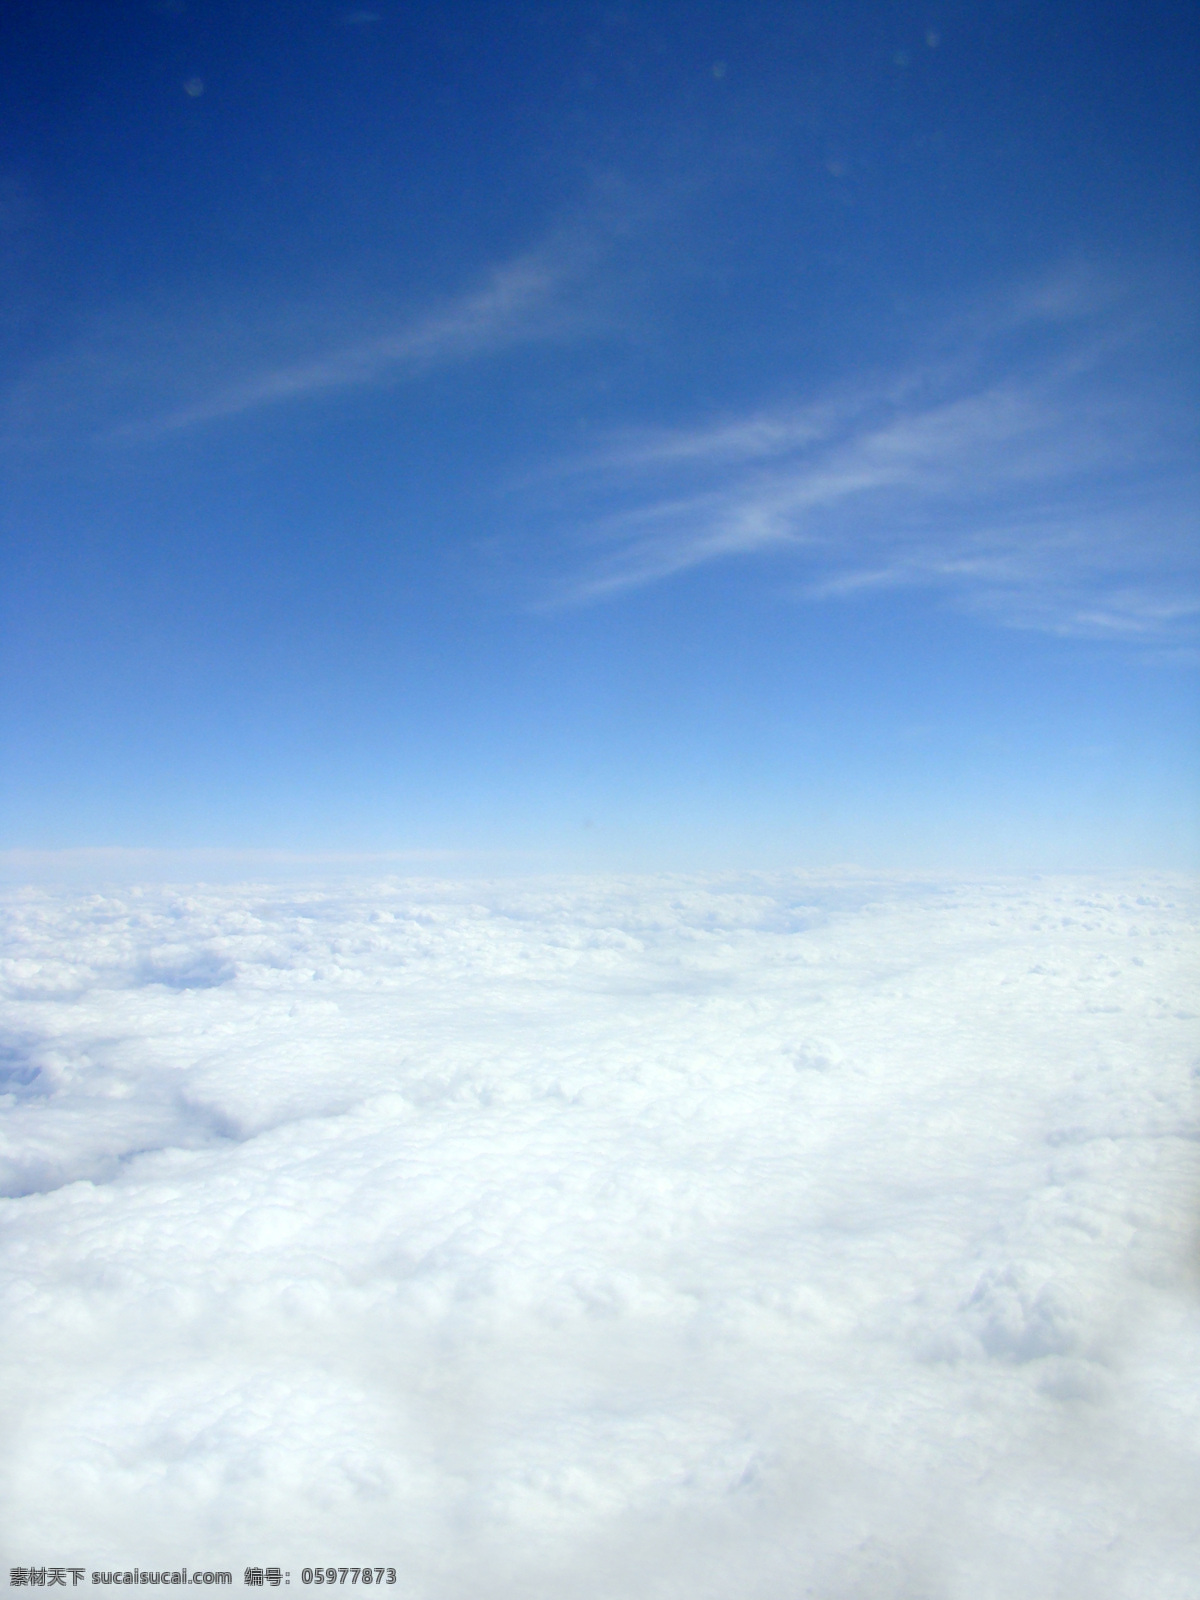 晴朗 天空 主题 白云 白云边 白云蓝天 云 晴朗的天空 白云图片 白云朵朵 白云天地 白云的图片 白云的荷花 白云效果 风景 生活 旅游餐饮